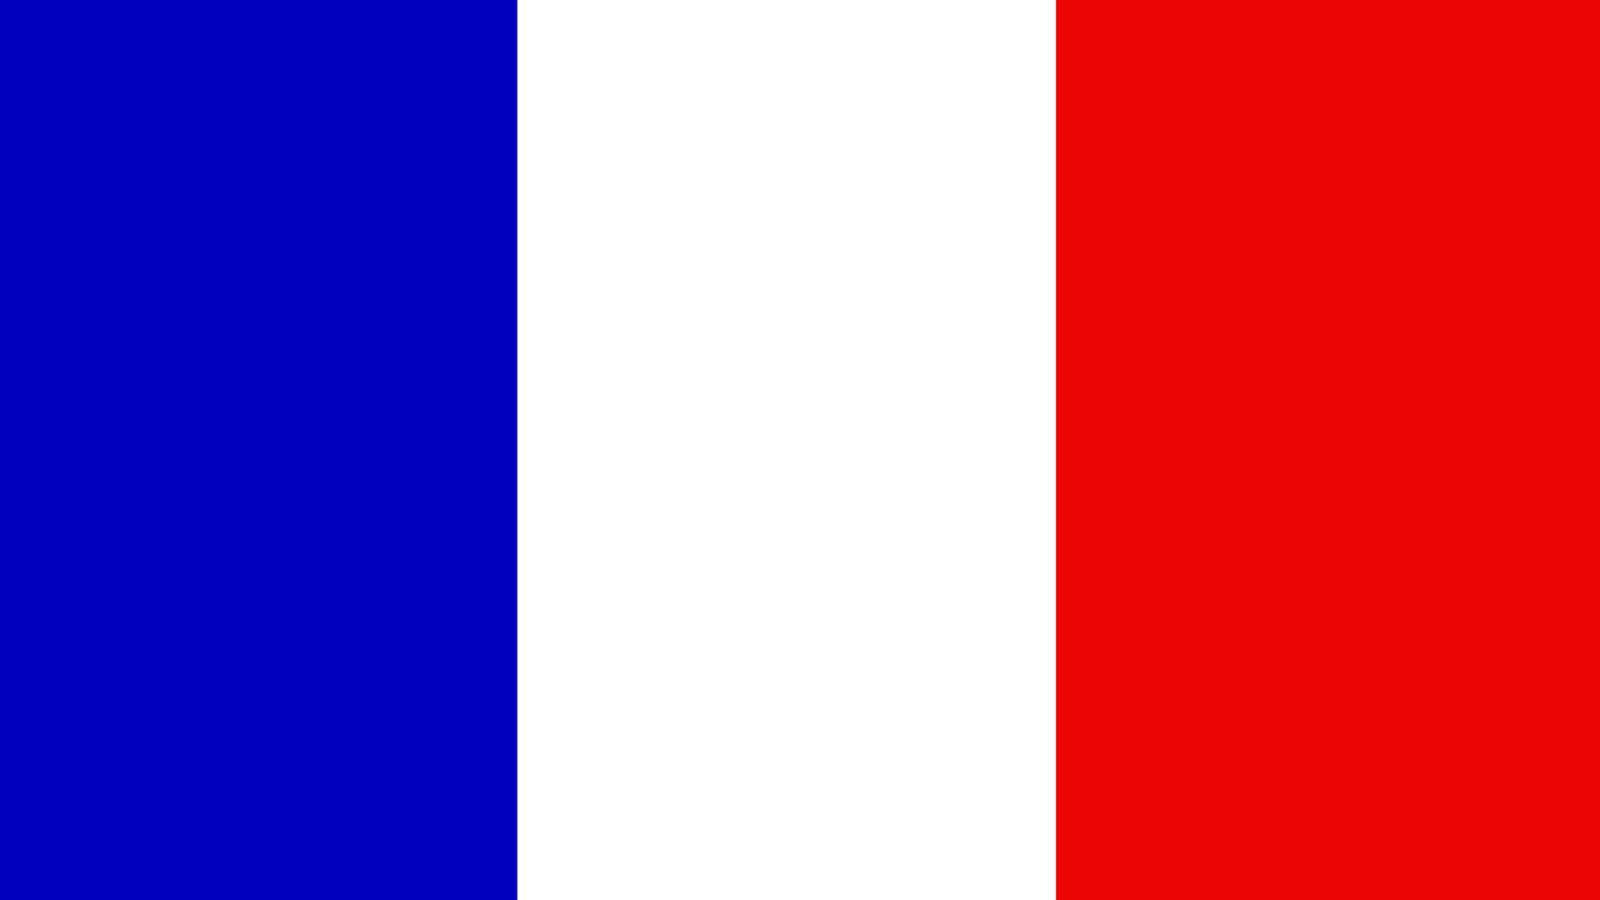 Ranska viralliset päätökset Emmanuel Macron julkaisi Euroopassa